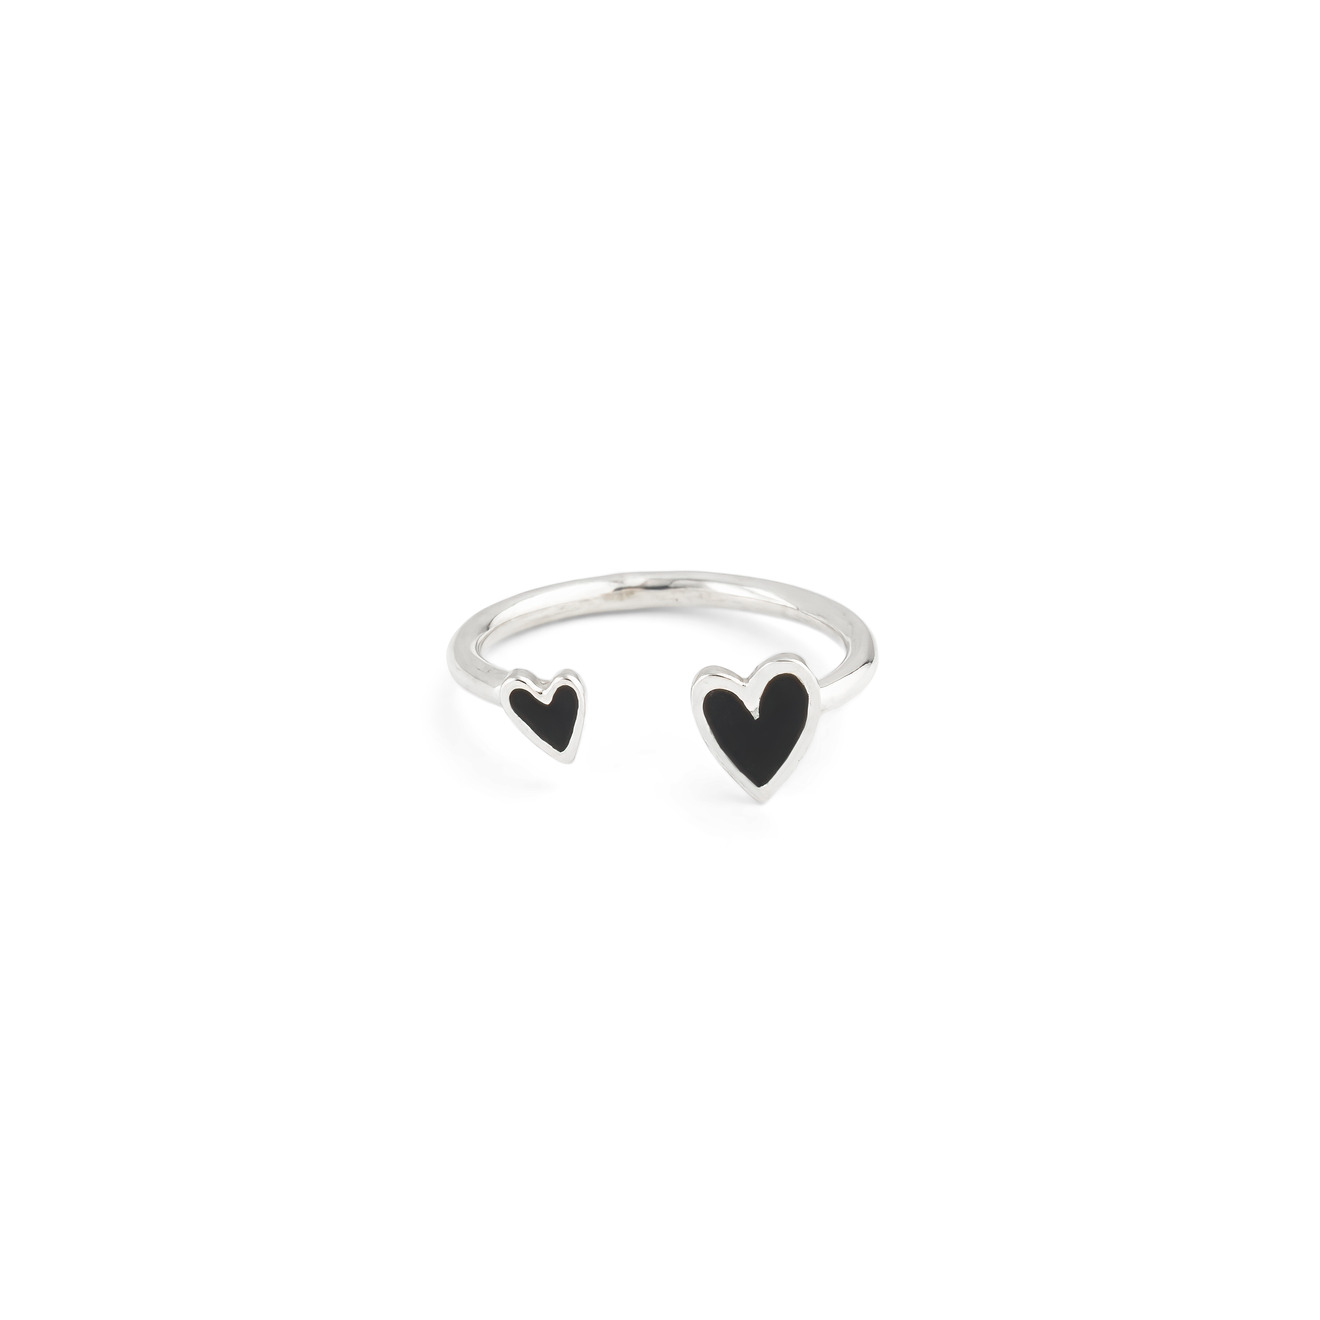 УРА jewelry Кольцо из серебра с двумя сердцами с черной эмалью ура jewelry золотая подвеска сердце с синей эмалью на леске